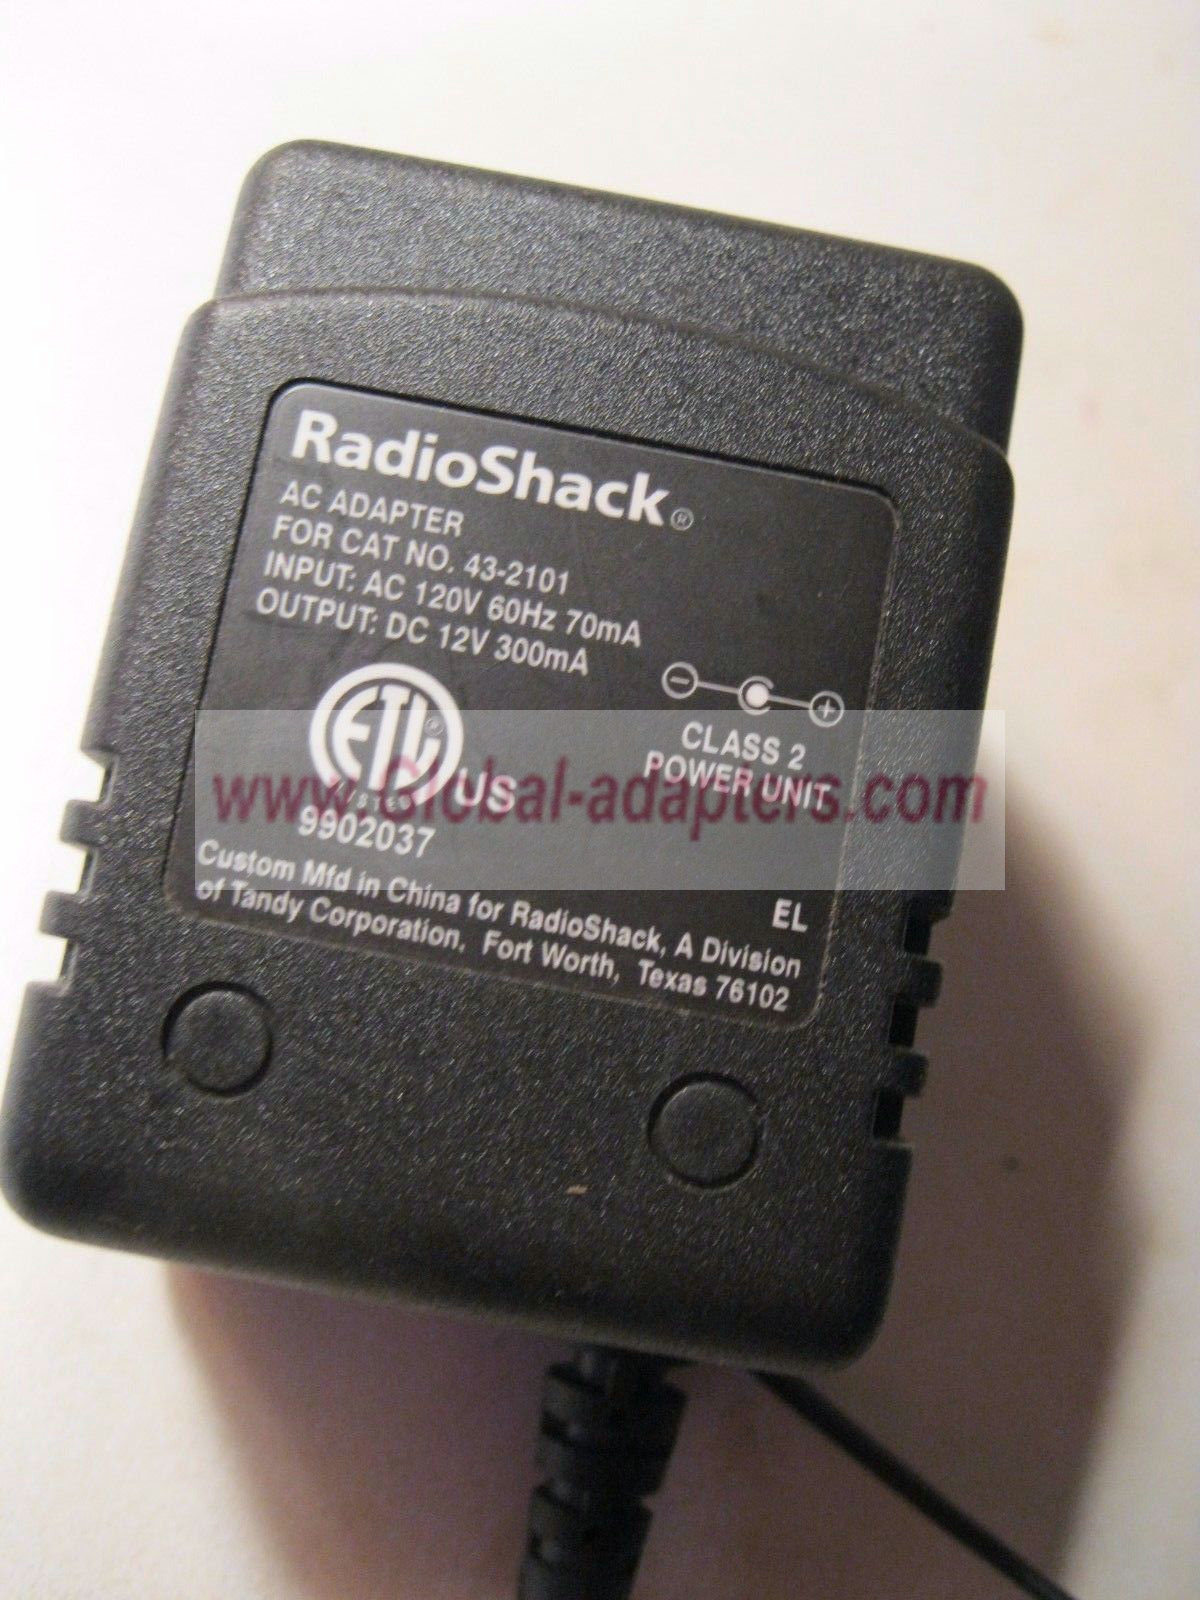 NEW 12V 300mA RadioShack 43-2101 AC Adapter - Click Image to Close